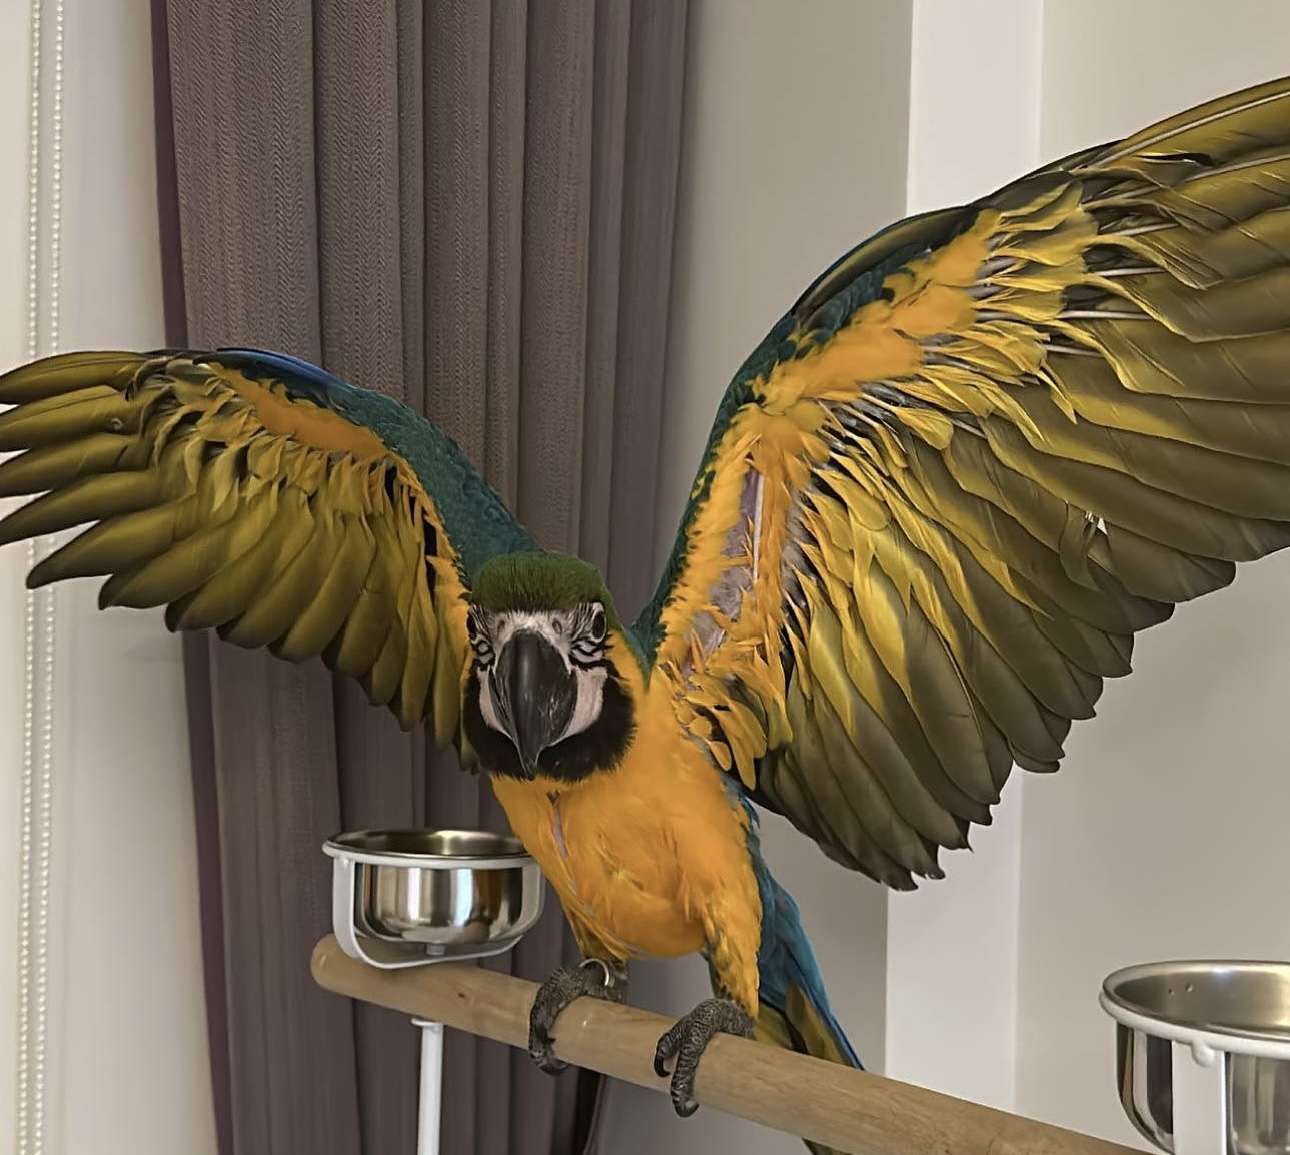 26 eylül salı günü 3 aylık macaw papağanım izmir general kazım özalp mimkent üçkuyular poligon civarında kaçmıştır bulana ödül verilecektir 05424418572 lütfen görüp duyduysanız arayın